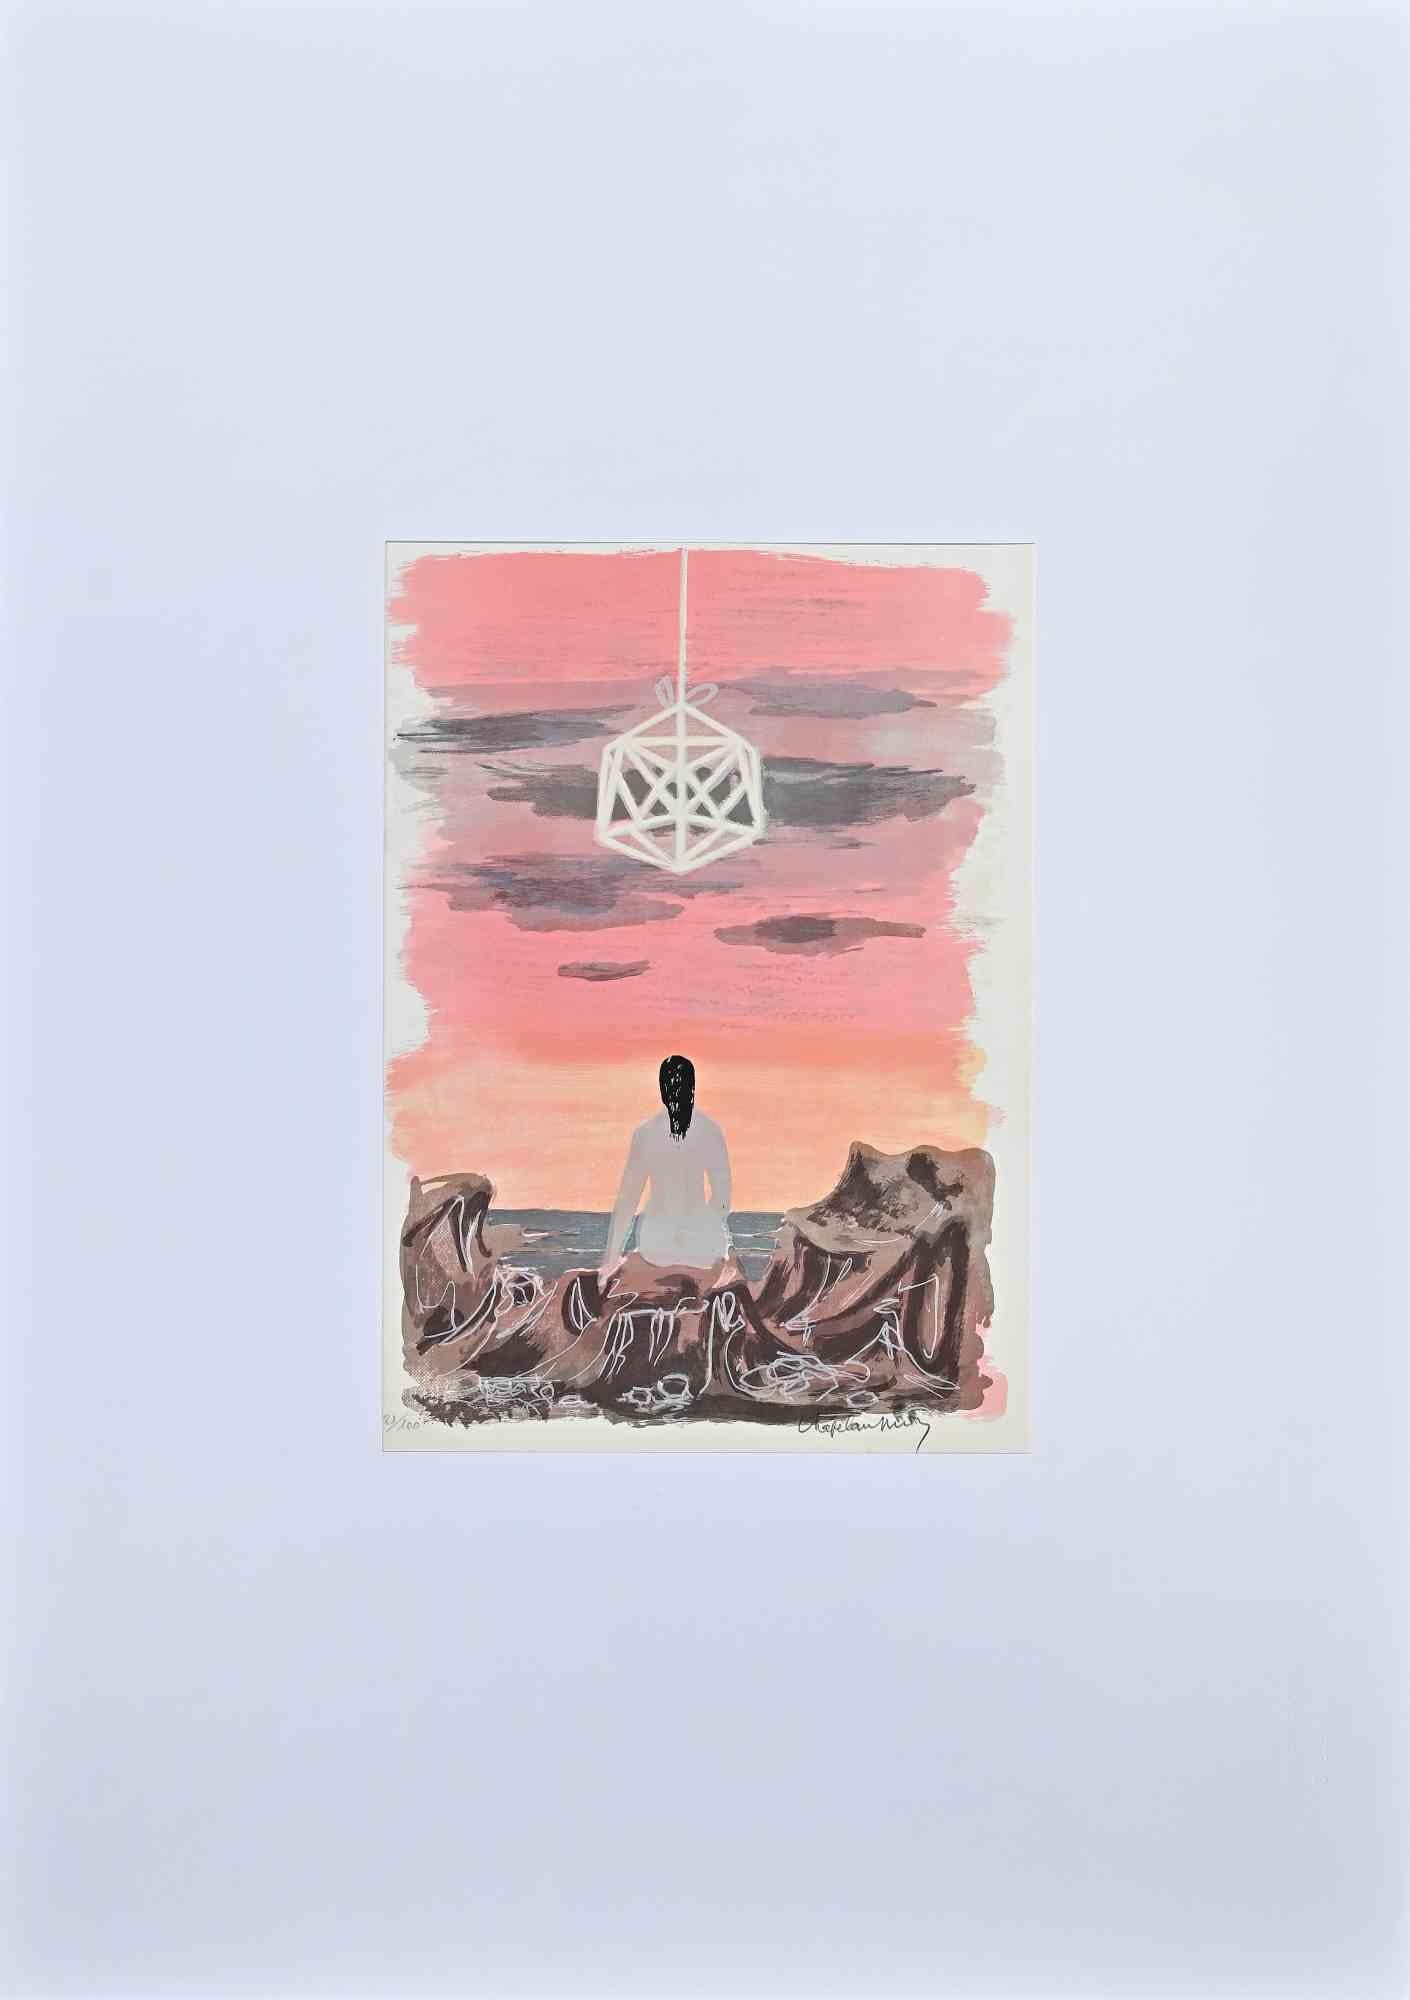 Sonnenuntergang ist eine farbige Original-Lithographie des Künstlers Roger Chapelain-Midy  im Jahr 1971.

Vom Künstler rechts unten handsigniert. Links unten nummeriert. Auflage 81/100.

Das Kunstwerk stellt eine nackte Frau dar, die sich hinlegt